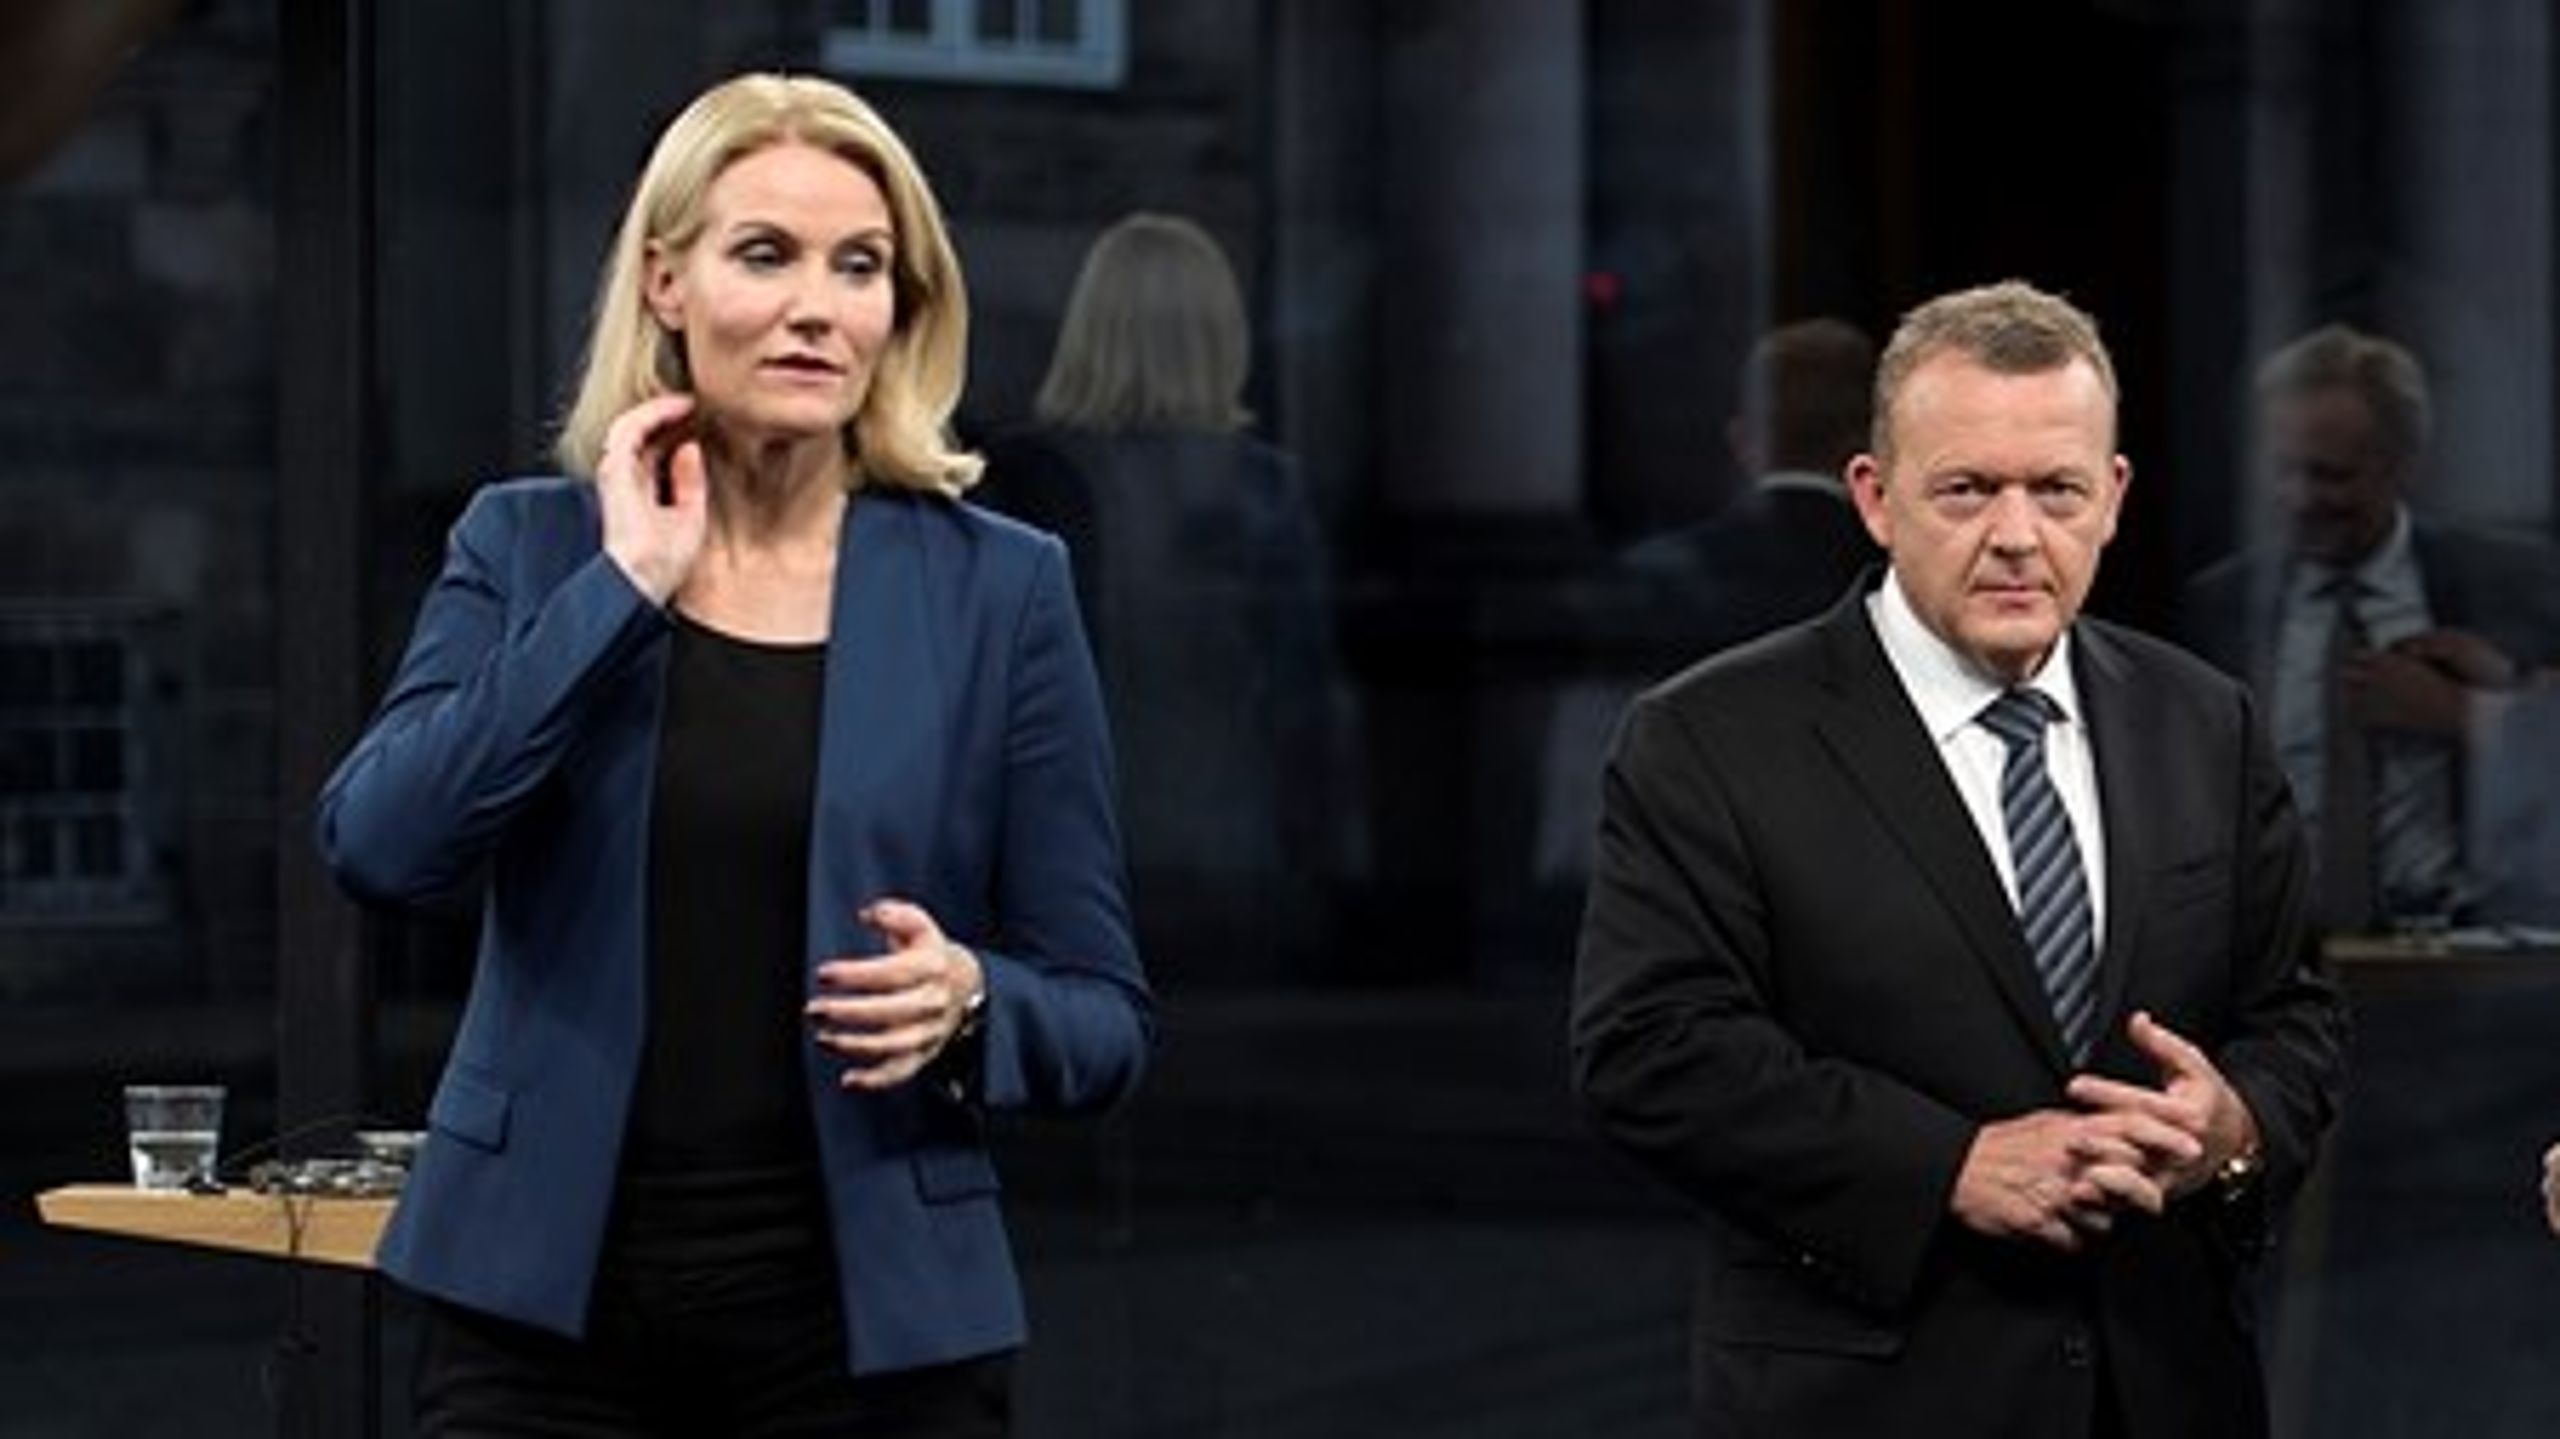 Godt en uge inde i valgkampen, har rød blok med statsminister Helle Thorning-Schmidt (S)&nbsp;i spidsen indhentet blå bloks gevaldige forspring. Nu står det lige.